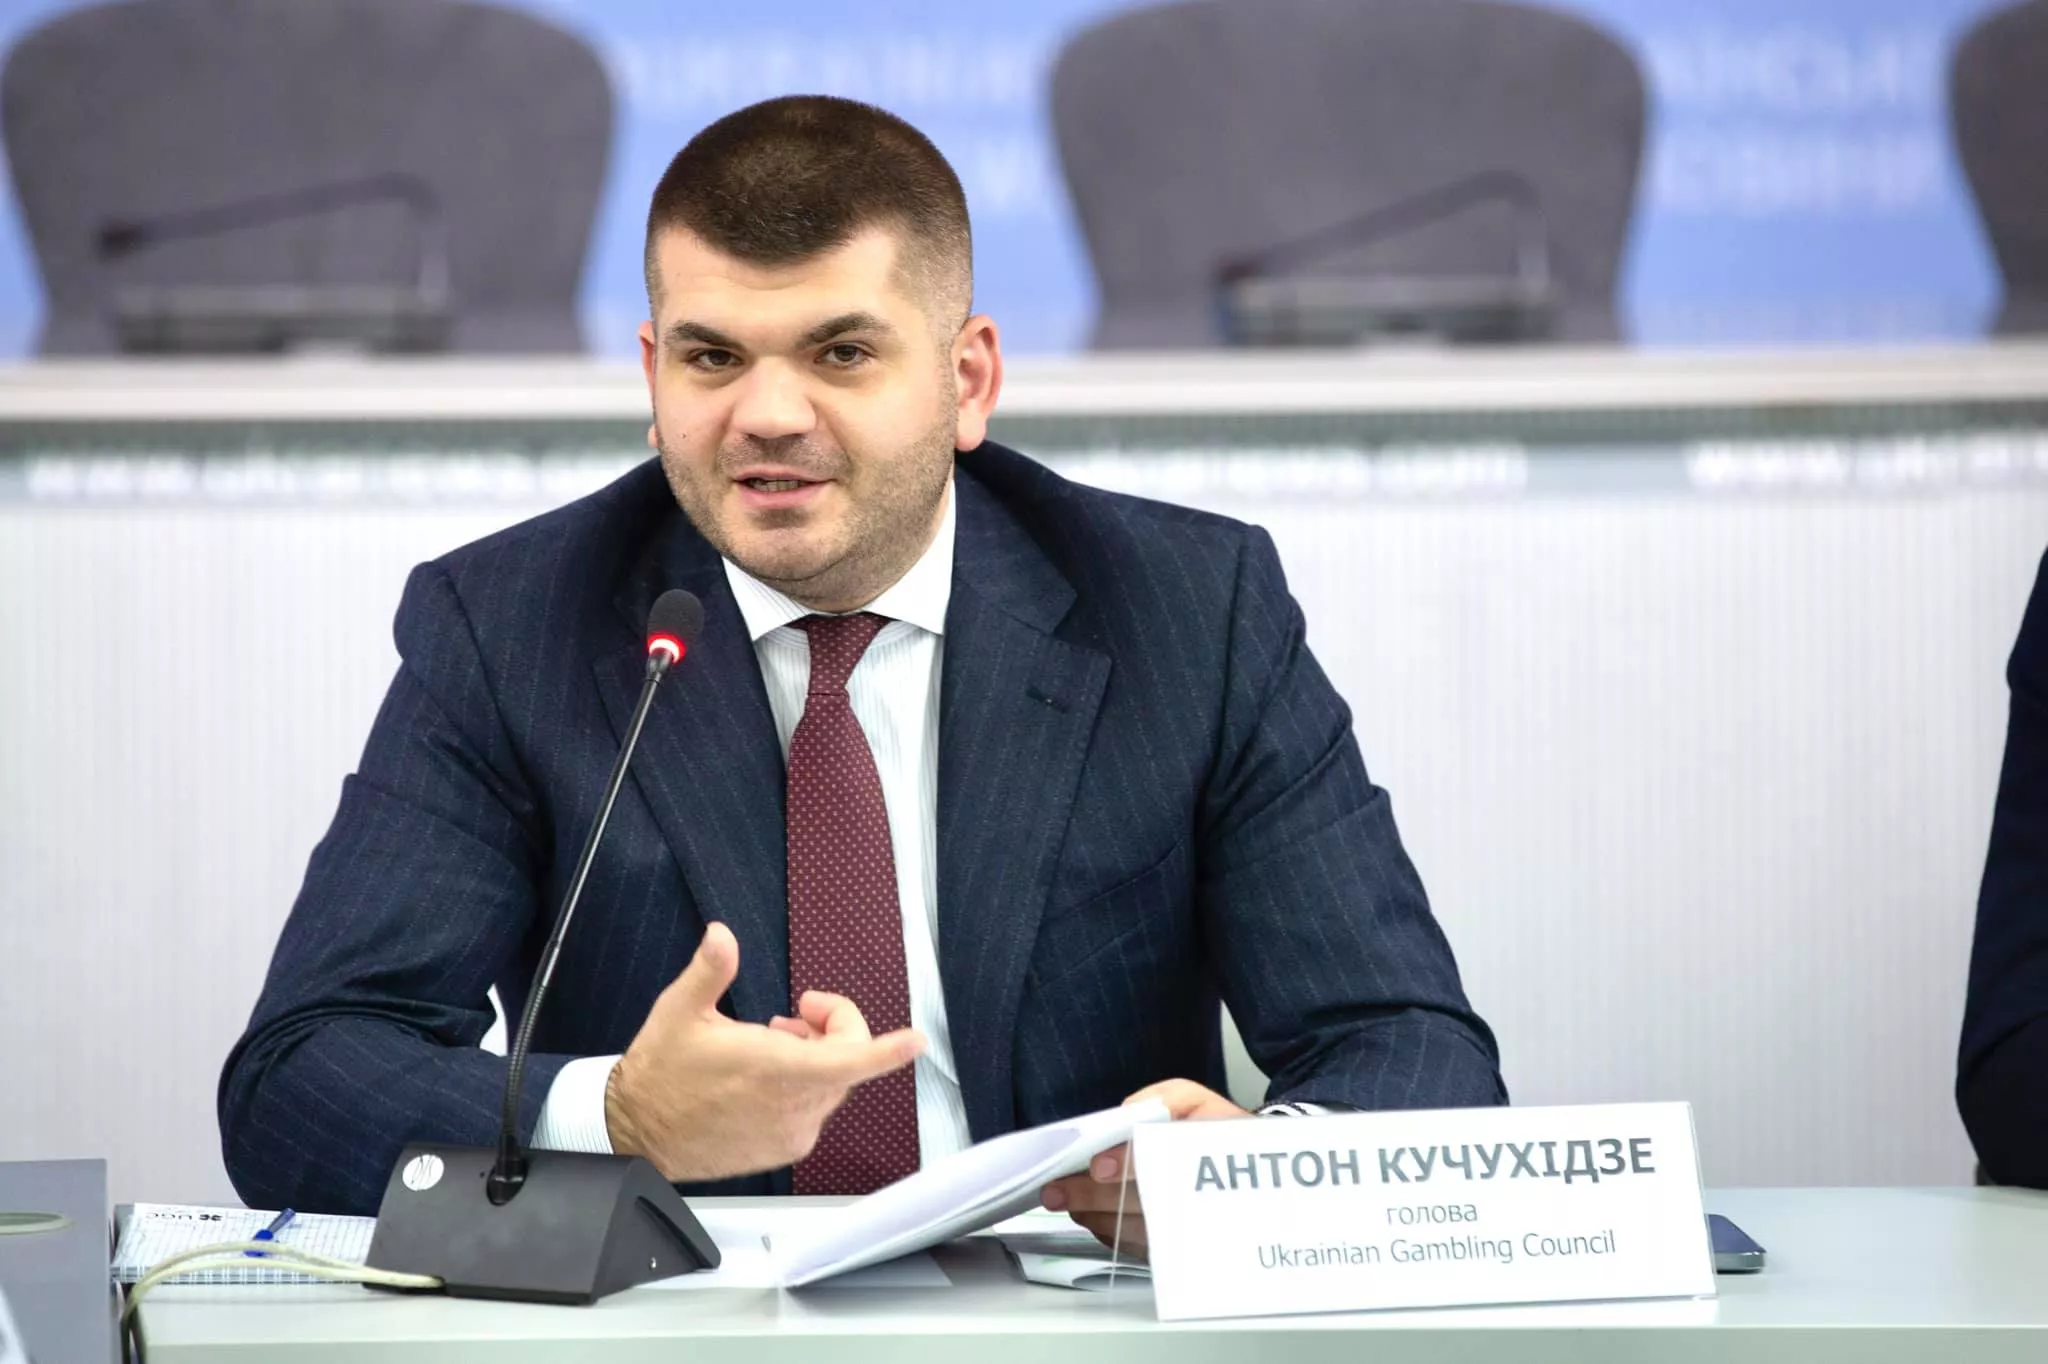 Антон Кучухидзе: "Скандал должен был внести разногласия в объединенном Западе, настроив Европу против США и Украины"